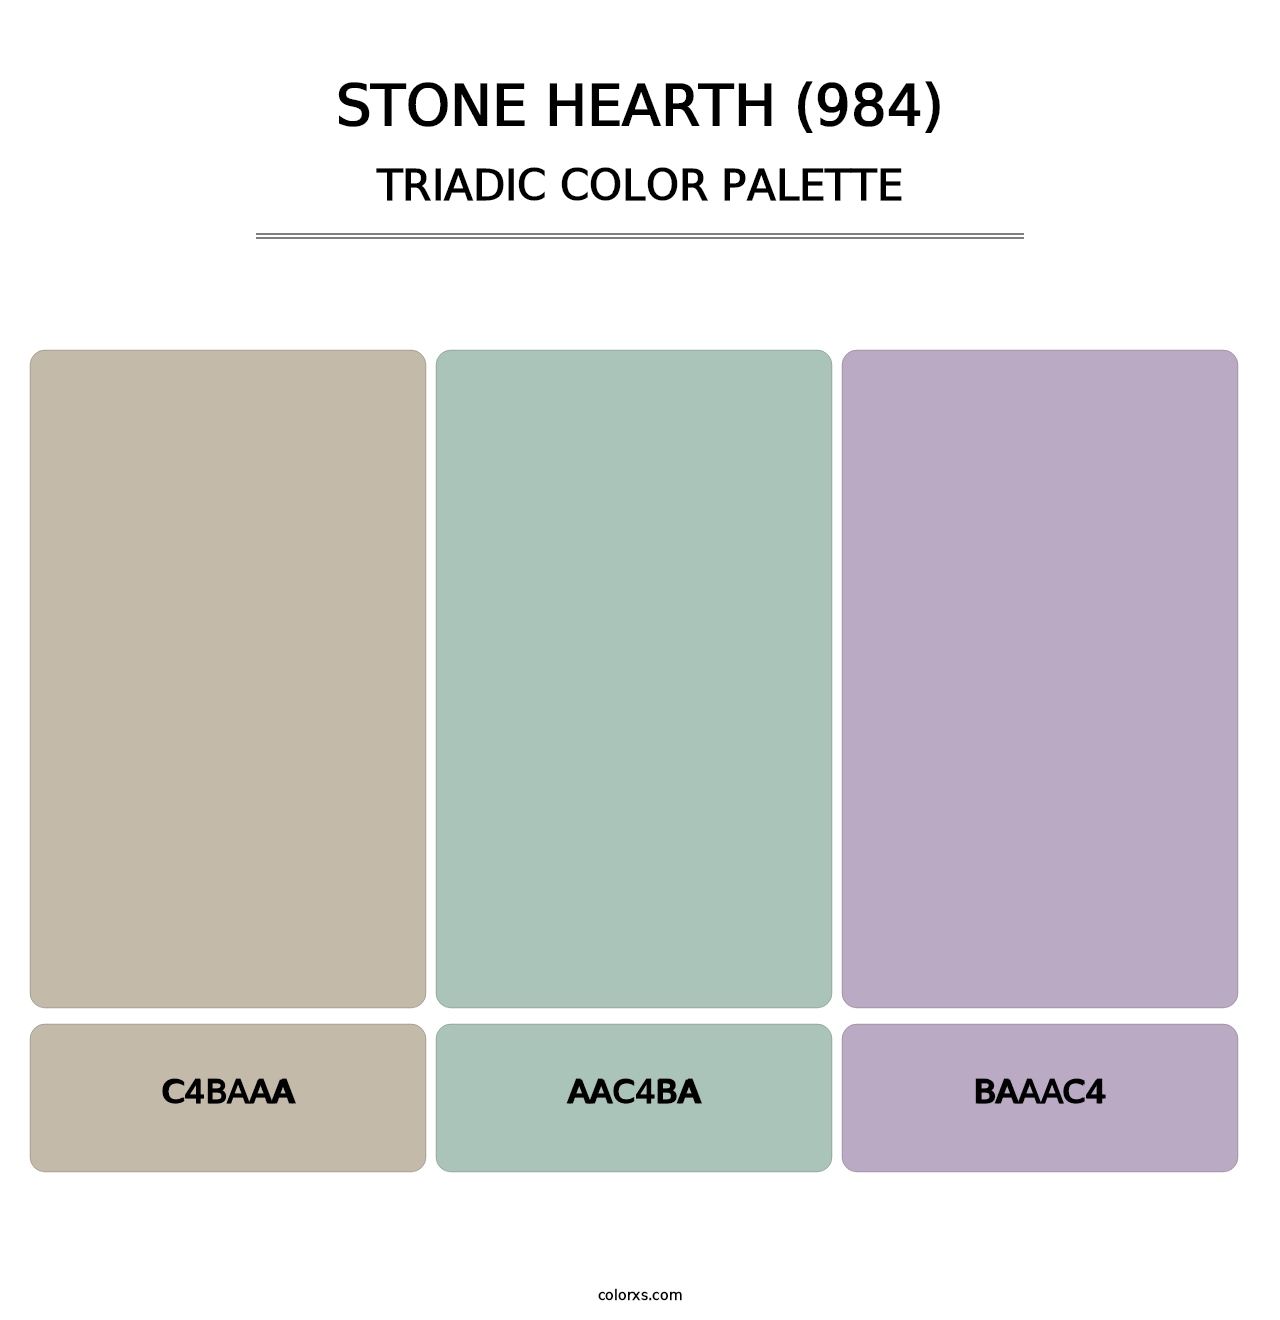 Stone Hearth (984) - Triadic Color Palette